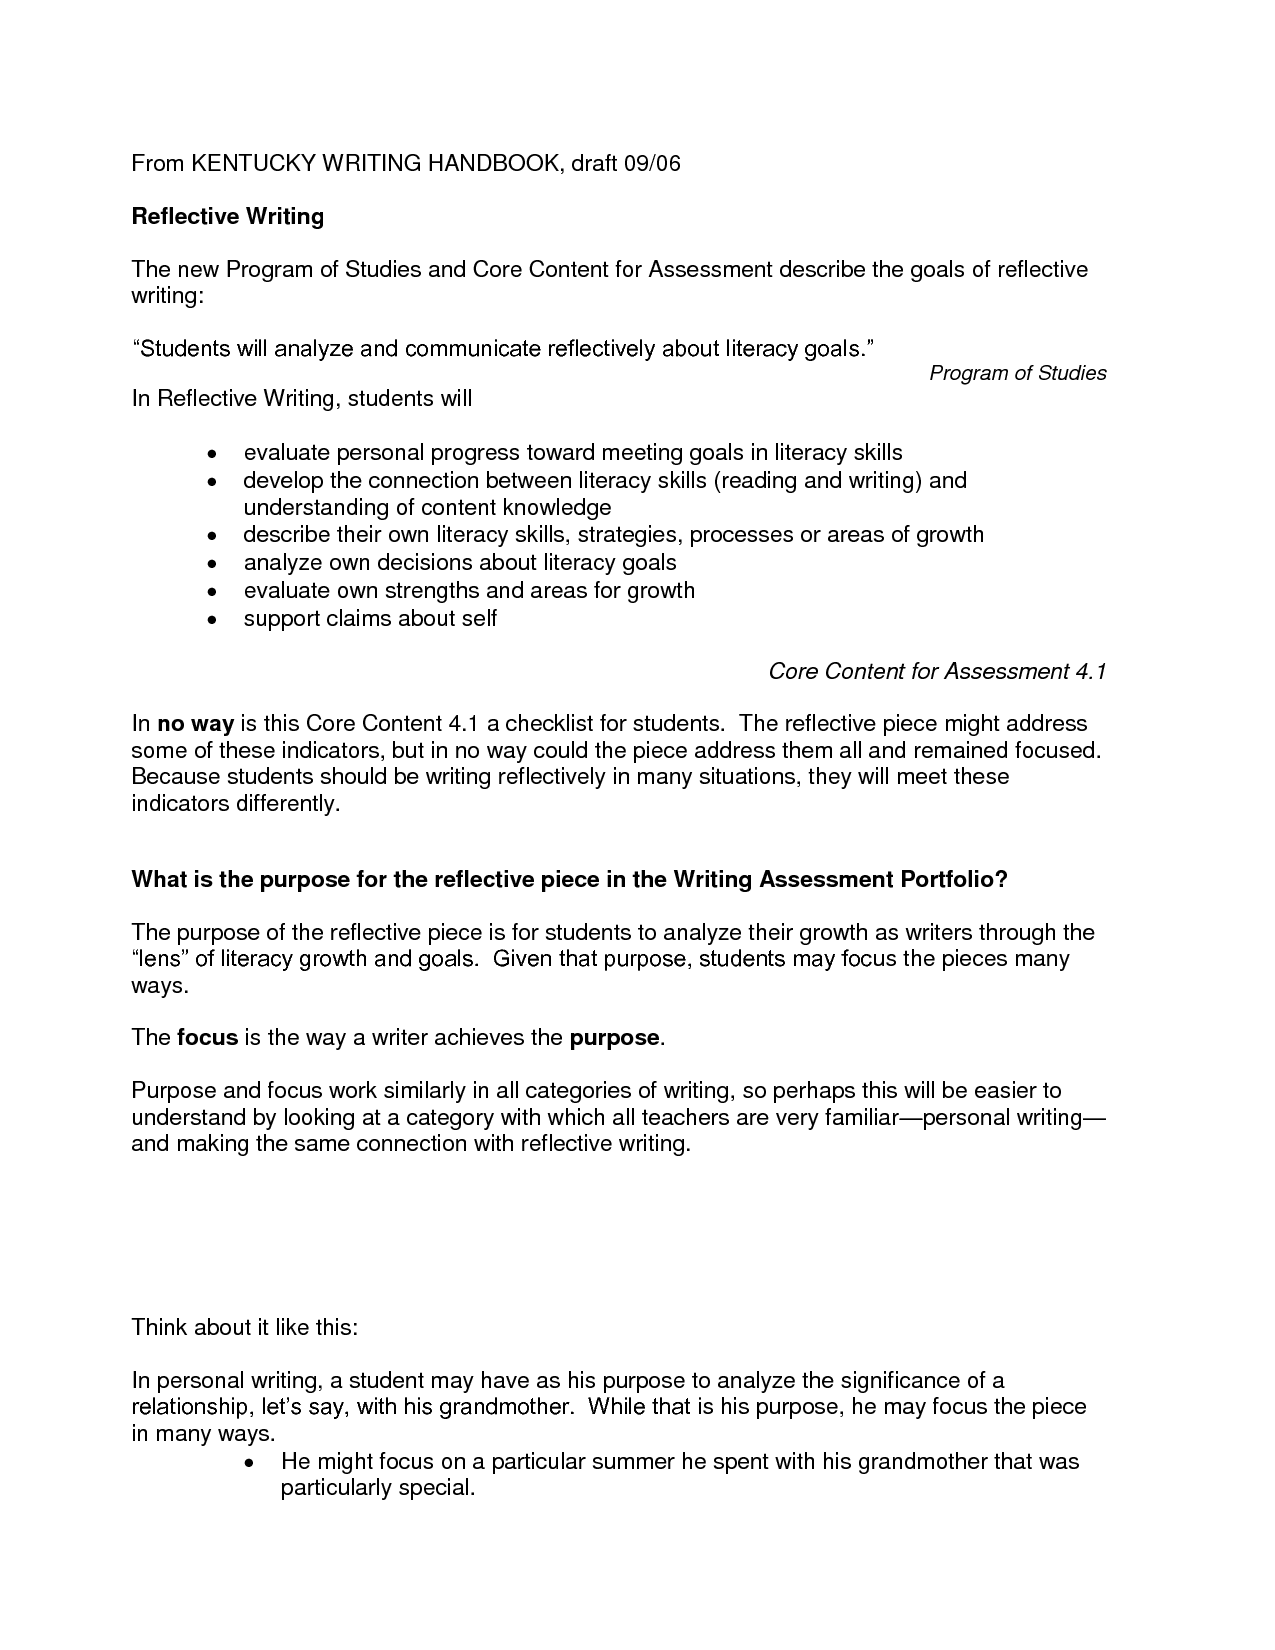 Nursing Reflective Essay Writing Image